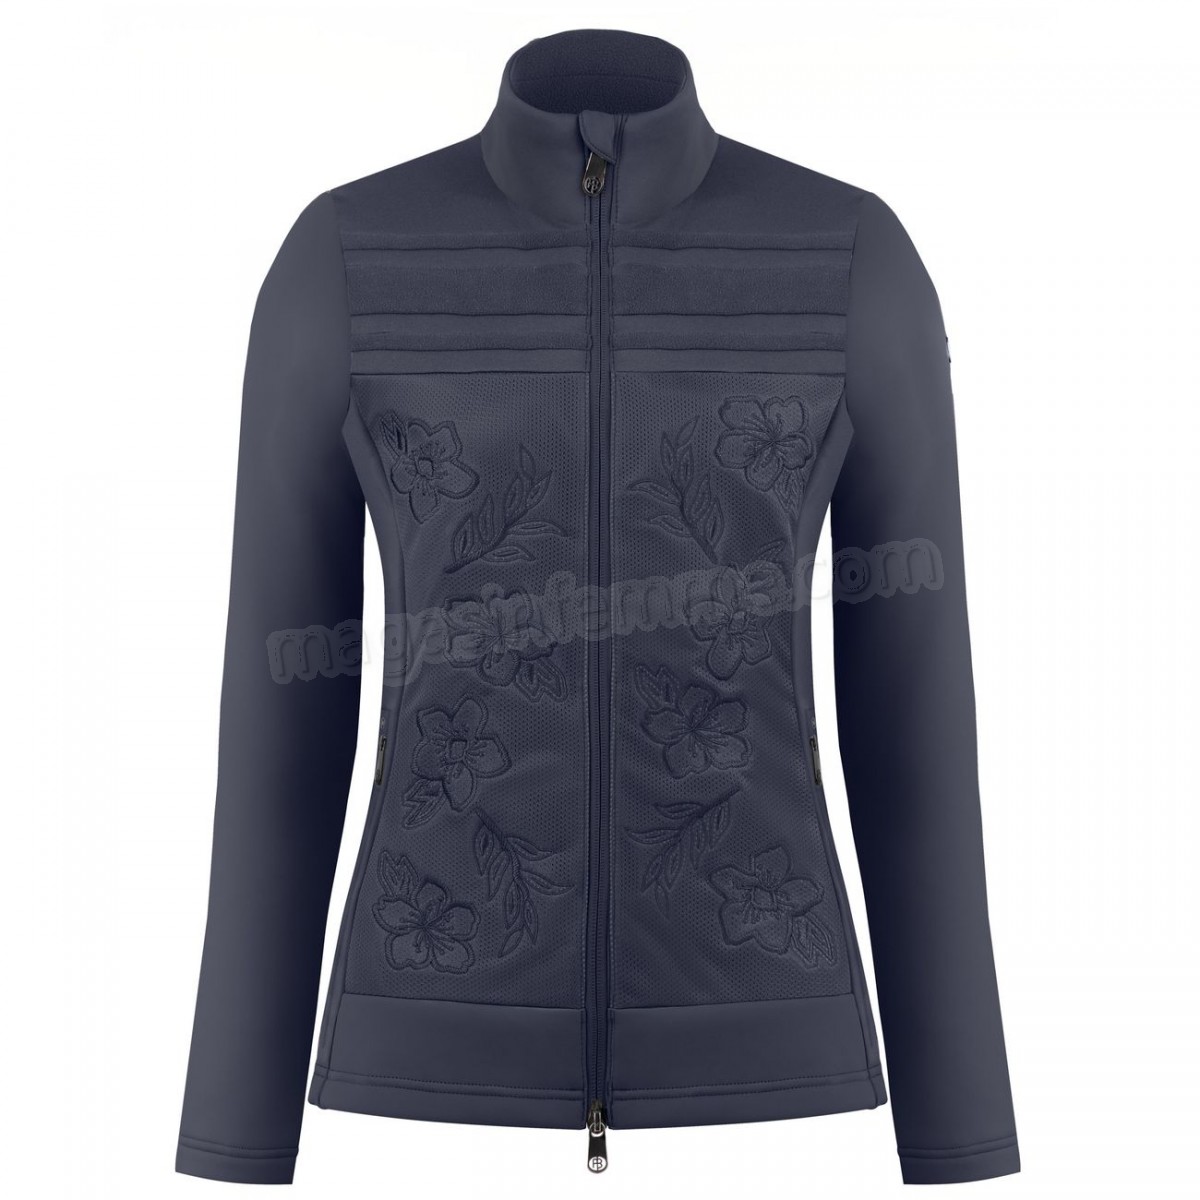 Poivre Blanc-Sports d'hiver femme POIVRE BLANC Veste Polaire Poivre Blanc Hybrid Stretch Fleece Jacket 1605 Gothic Blue 4 Femme en solde - -0